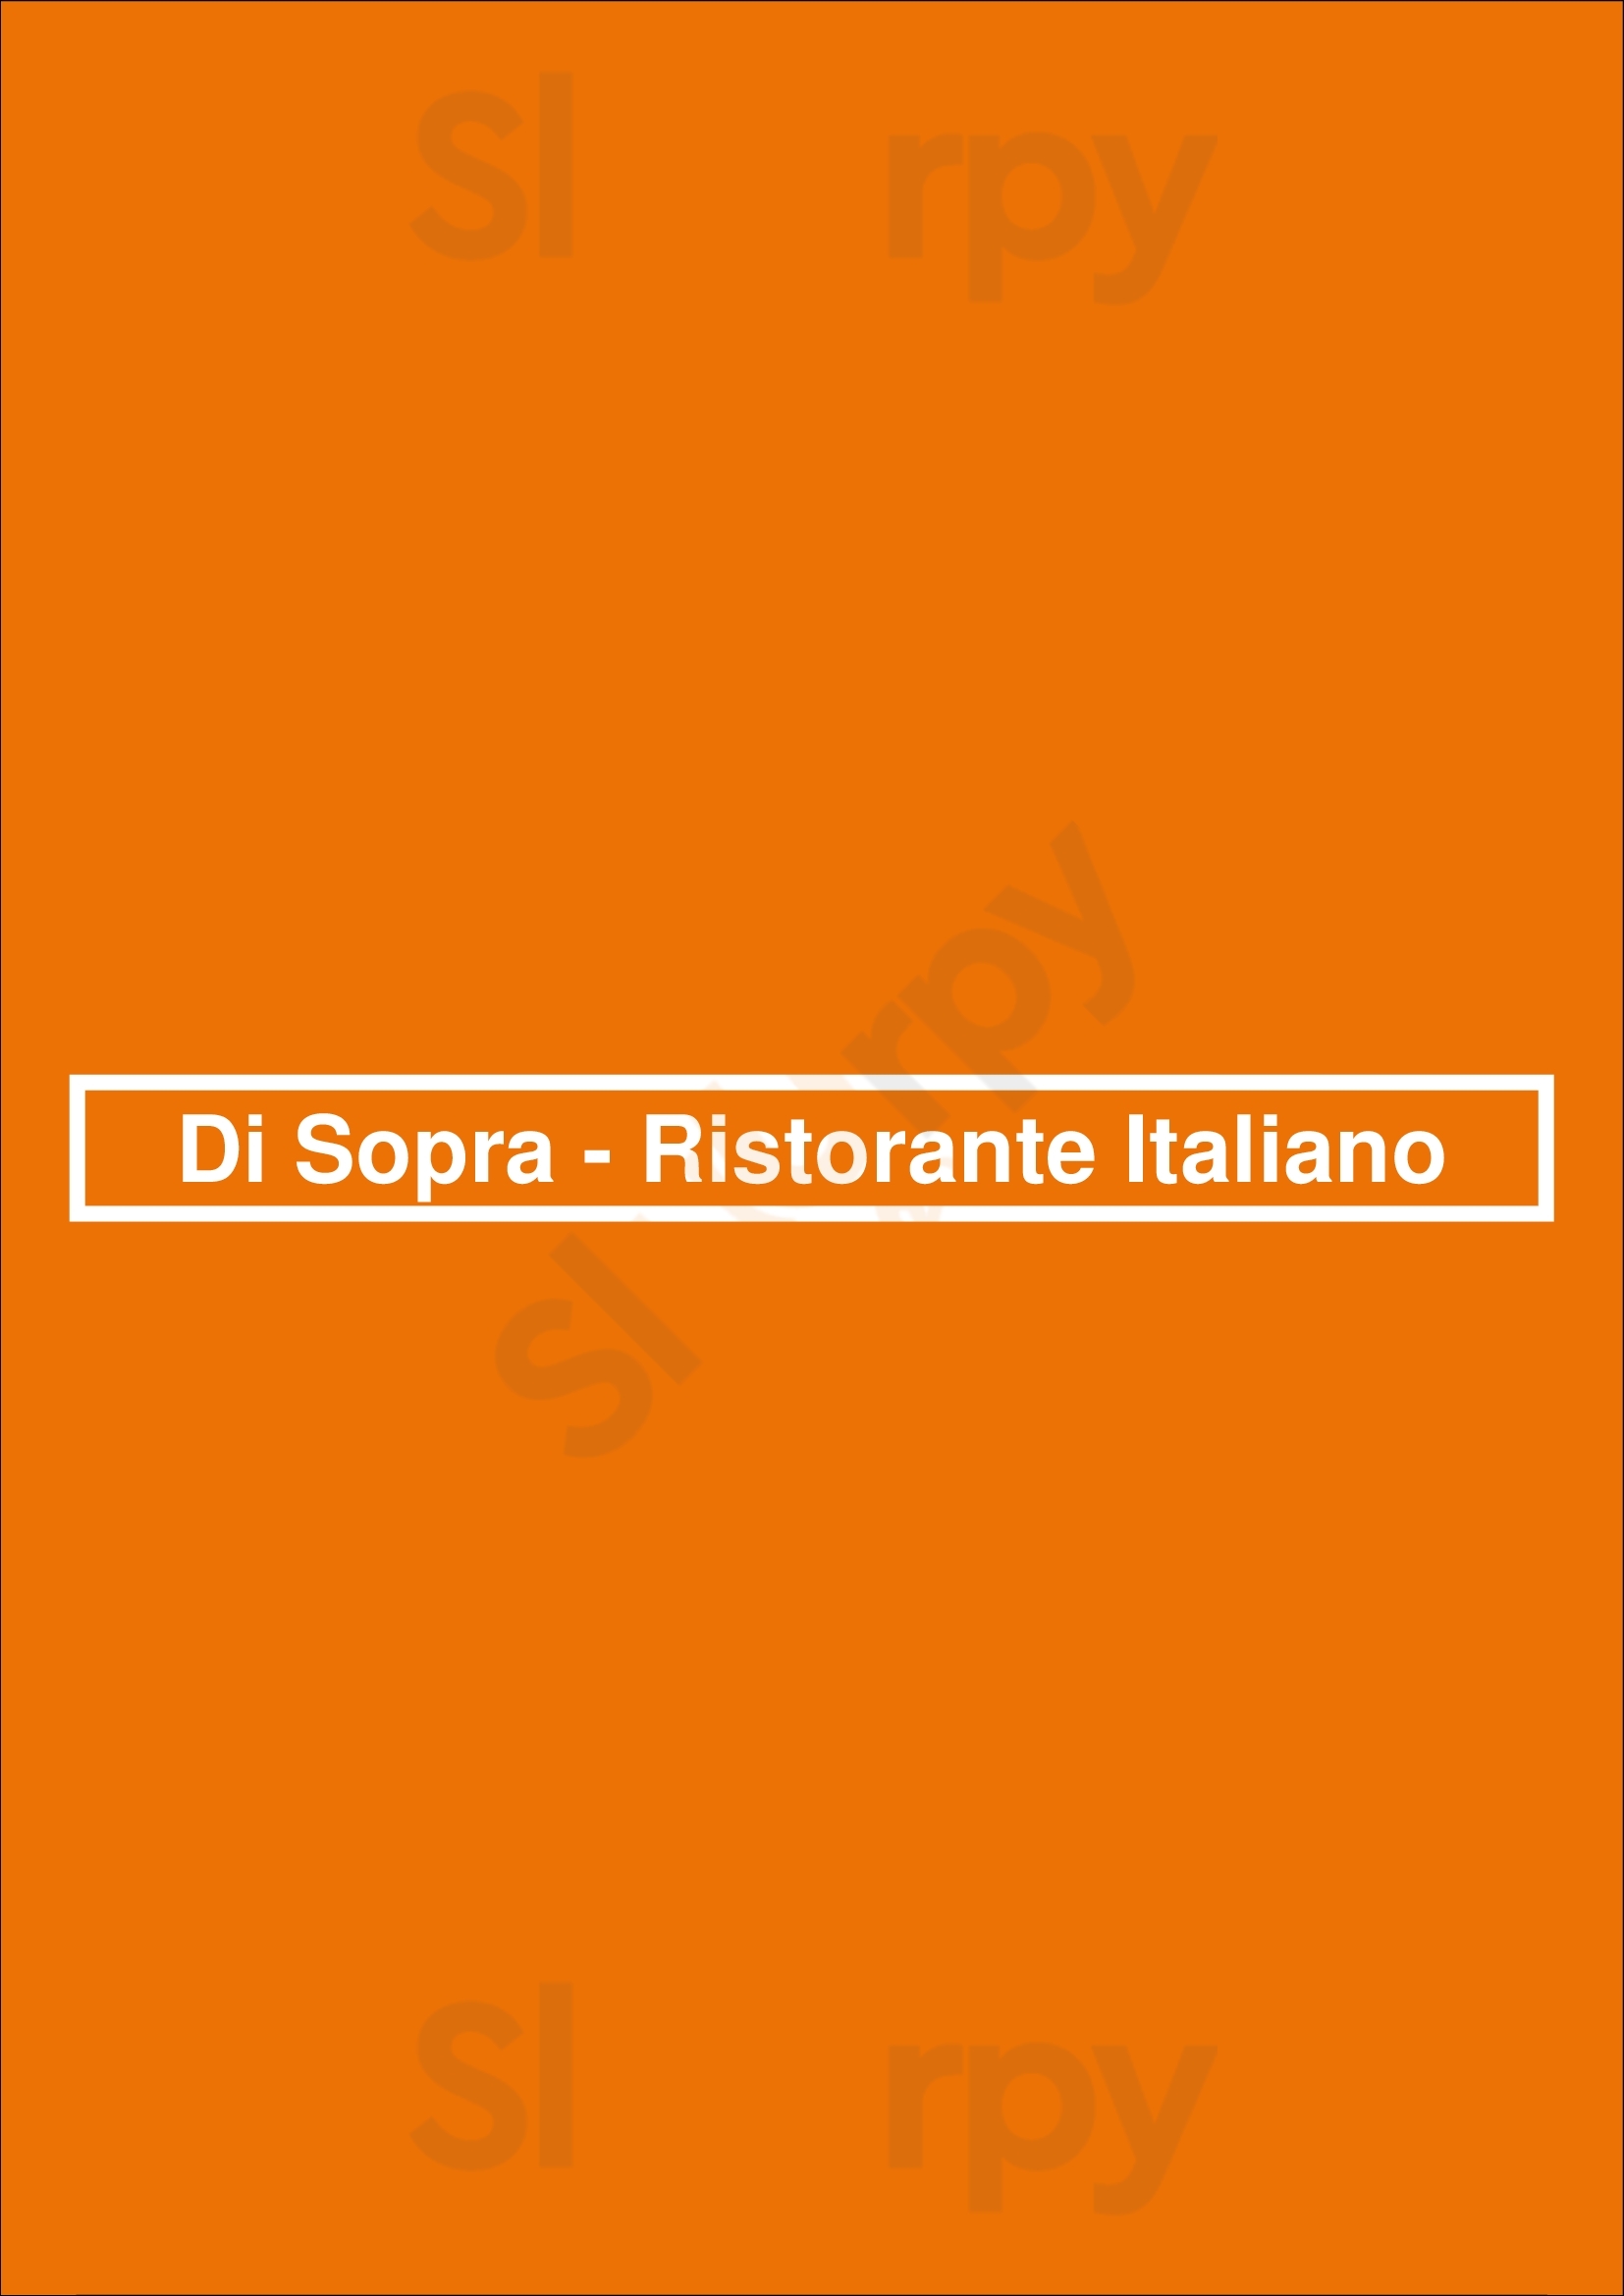 Di Sopra - Ristorante Italiano Den Haag Menu - 1